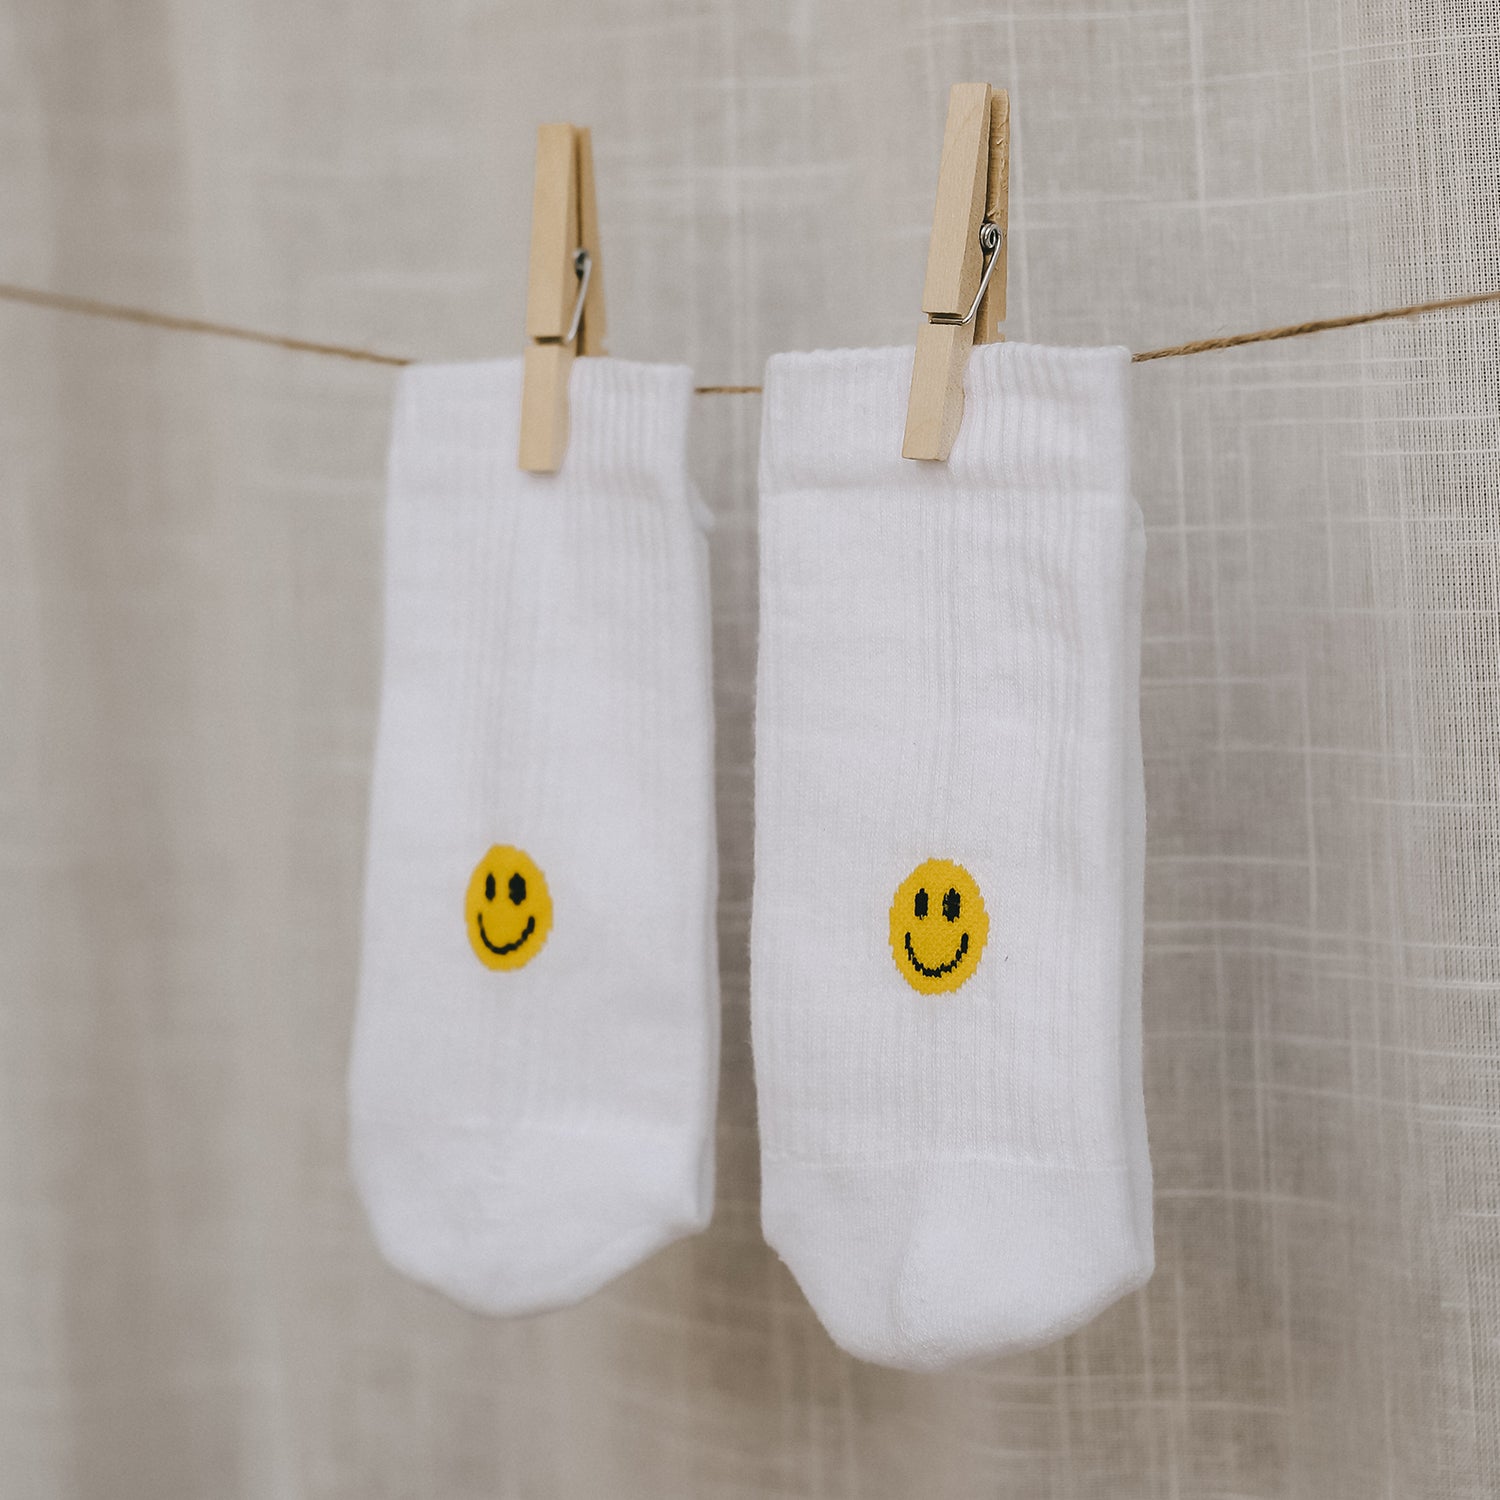 Socken - Gelber Smiley - 35-38 - Socken - Eulenschnitt